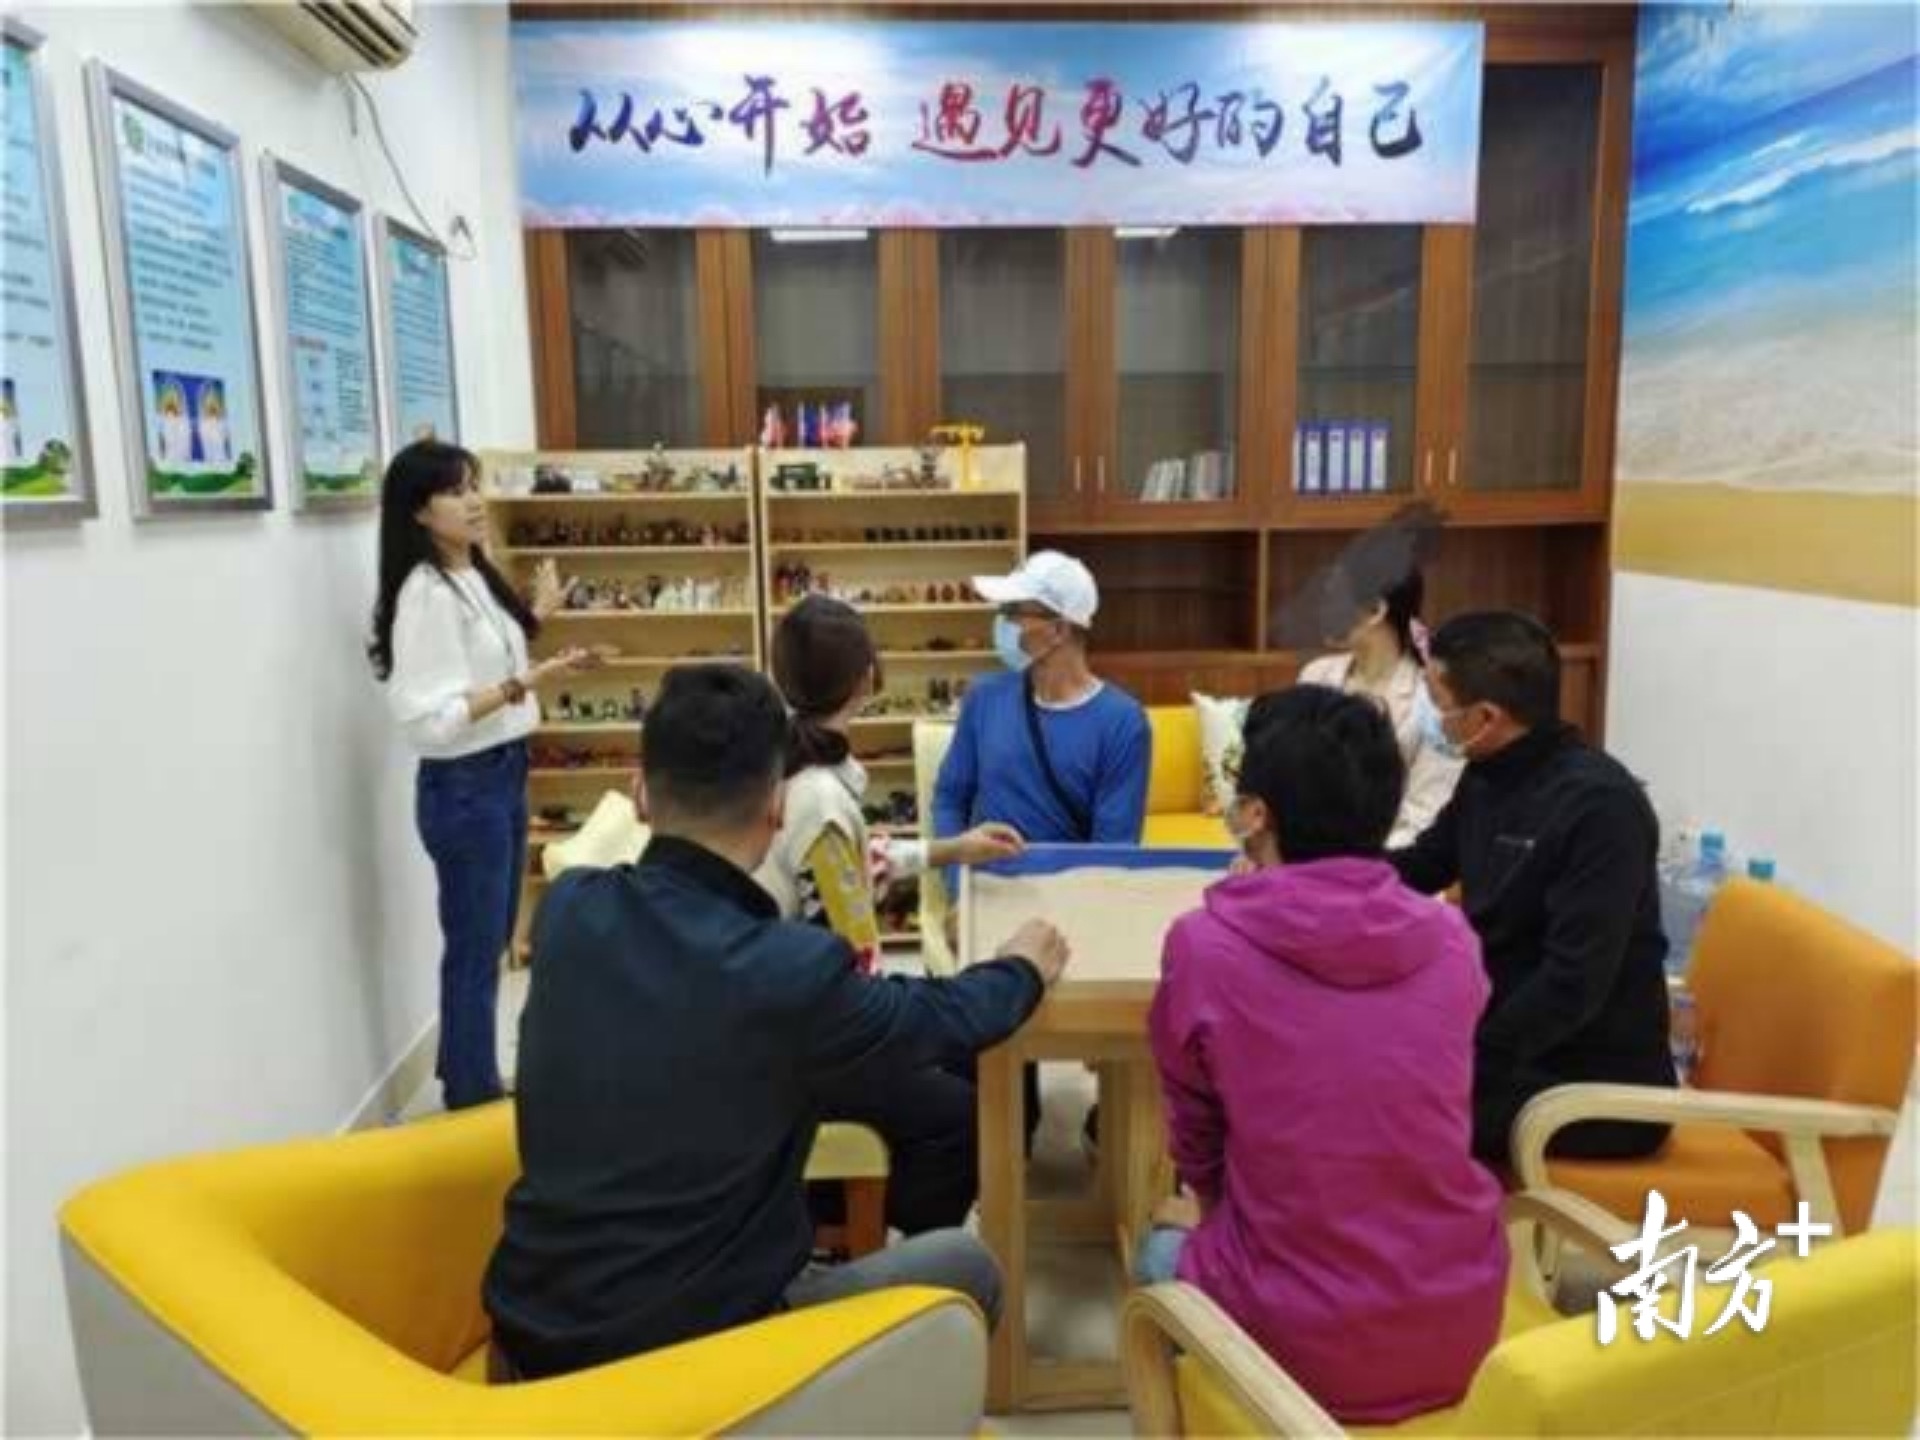 黄江镇“粤心安”社会心理服务站联合黄江司法分局为社区矫正人员开展团体沙盘辅导活动。